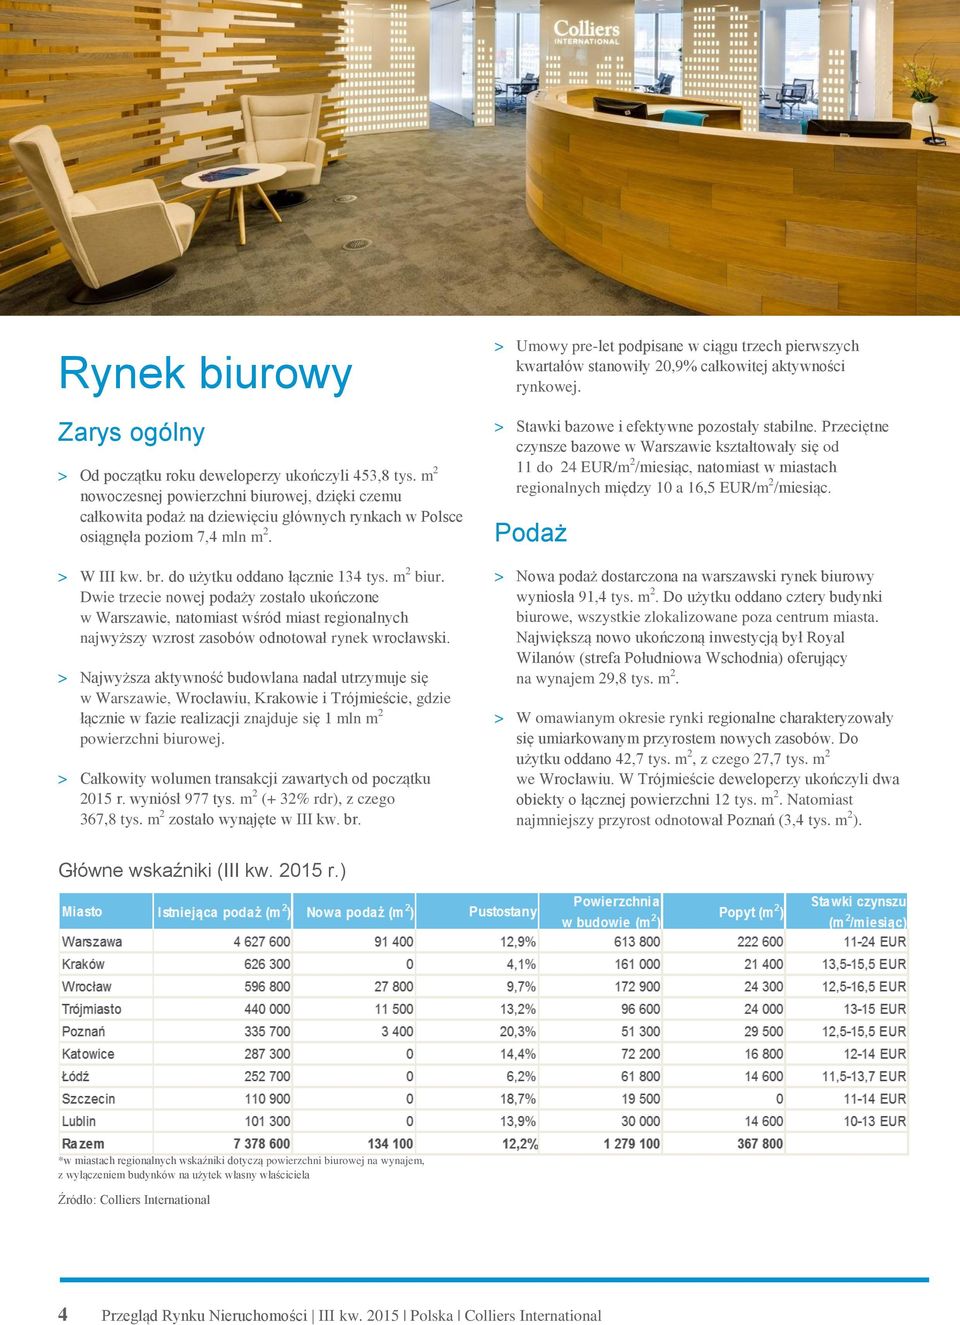 Dwie trzecie nowej podaży zostało ukończone w Warszawie, natomiast wśród miast regionalnych najwyższy wzrost zasobów odnotował rynek wrocławski.